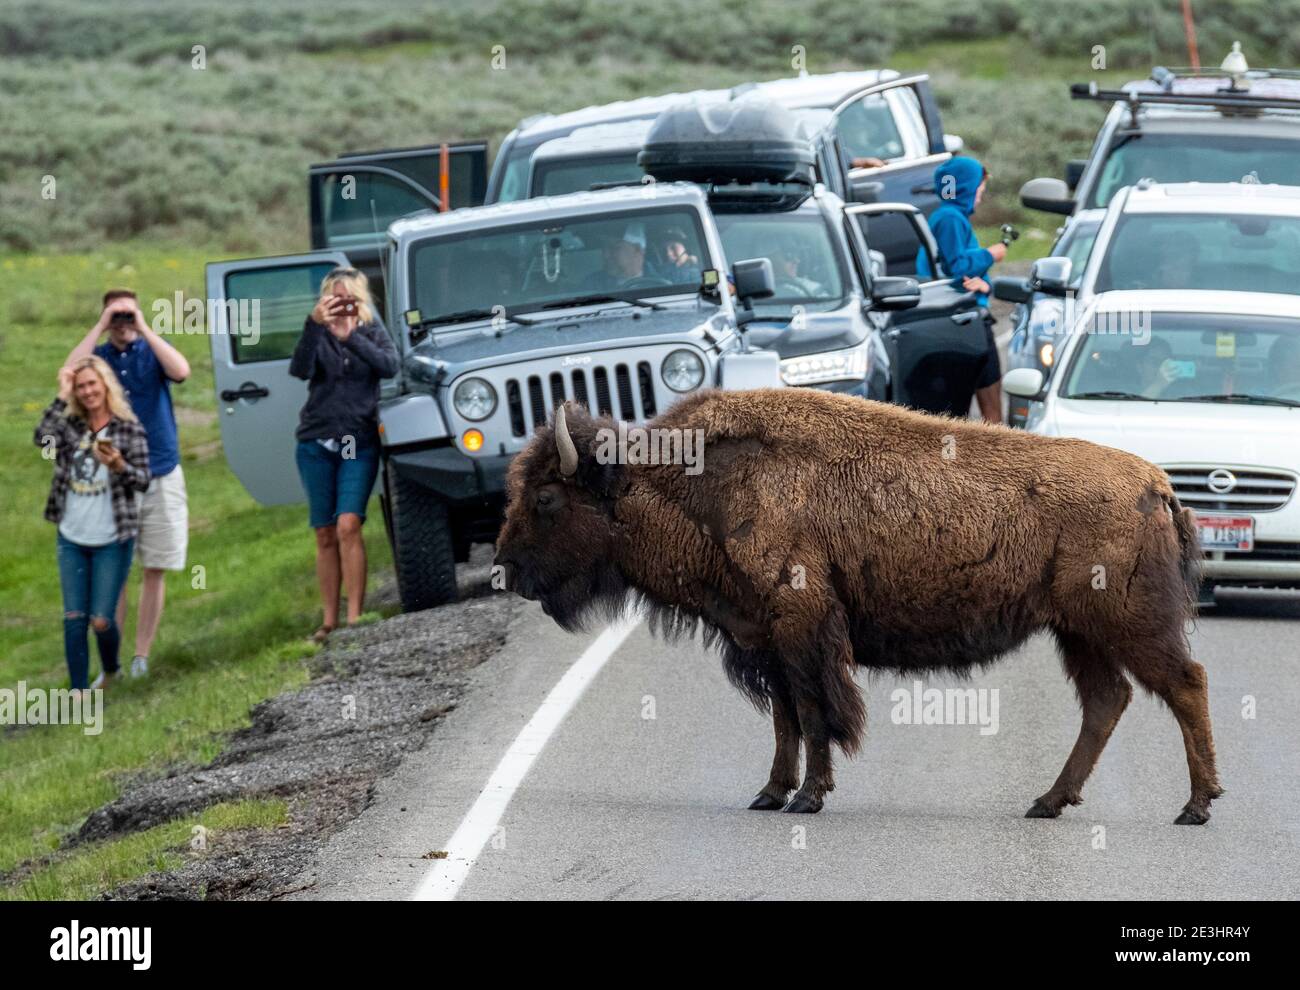 North American Bison causer un embouteillage alors qu'ils traversent la route principale à travers la Hayden Valley, le Parc National de Yellowstone, Wyoming, USA. Banque D'Images